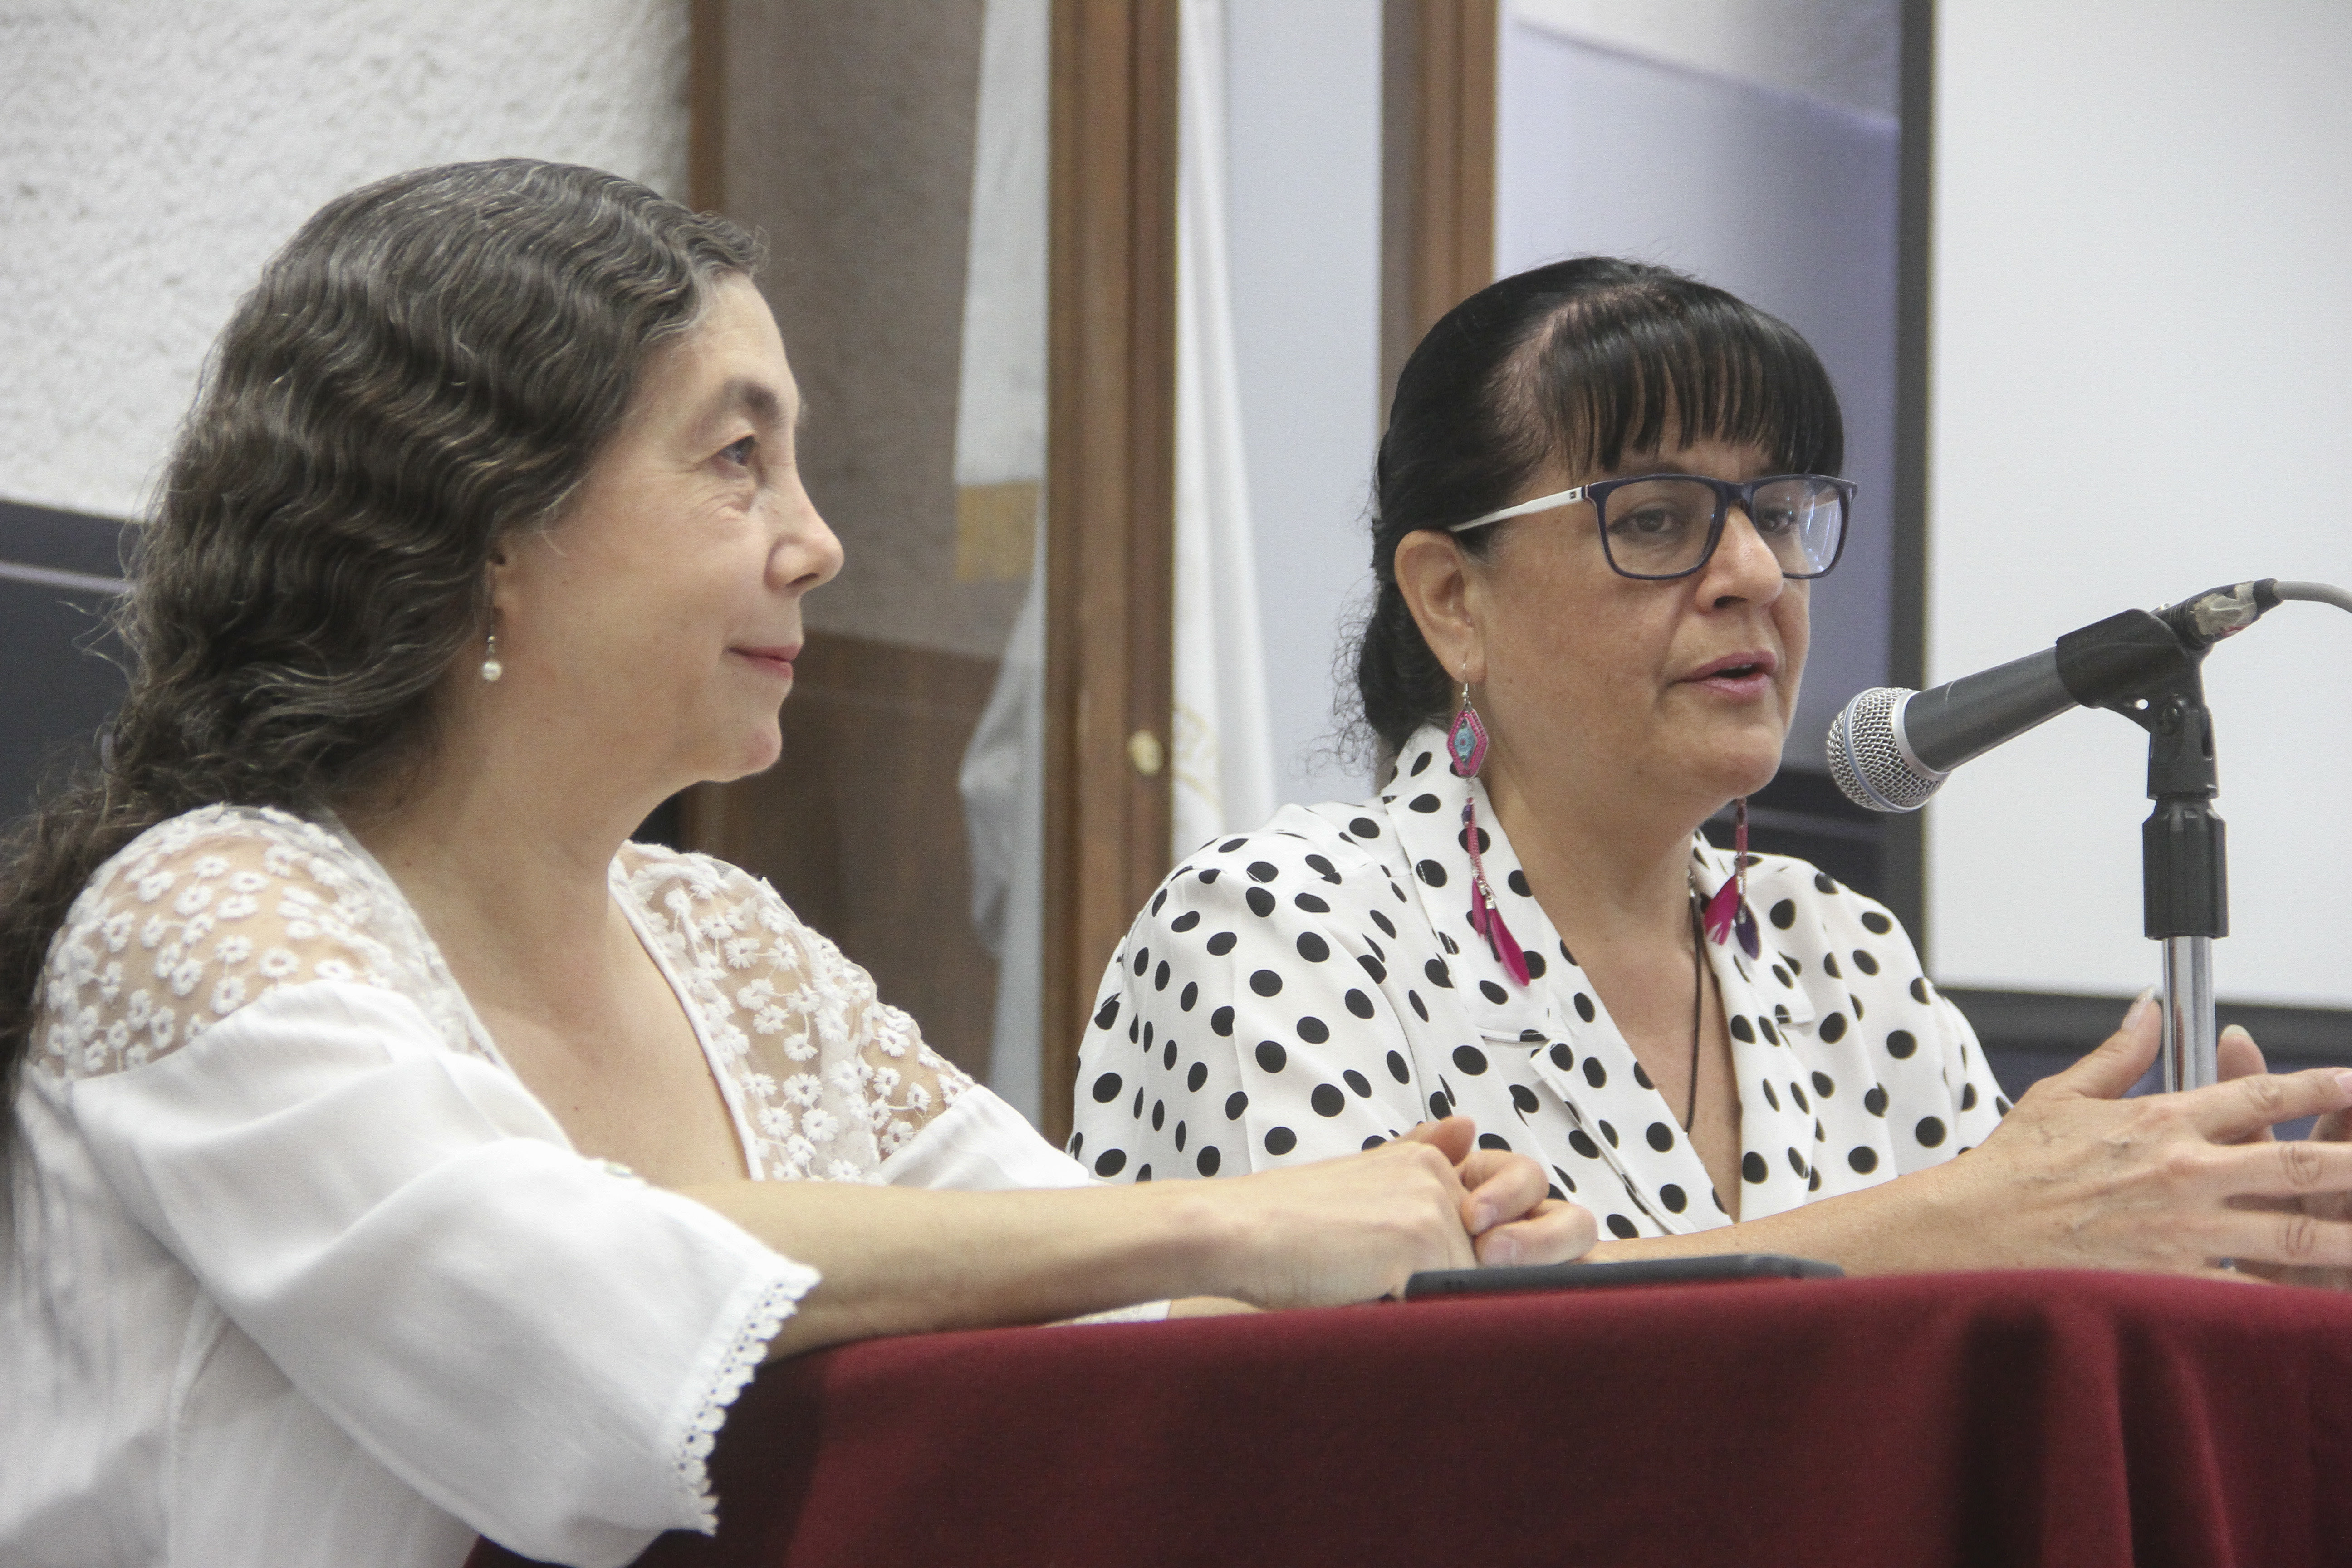  UAQ, sede del XXIII Encuentro Internacional y XIX Encuentro Iberoamericano de Mujeres en el Arte